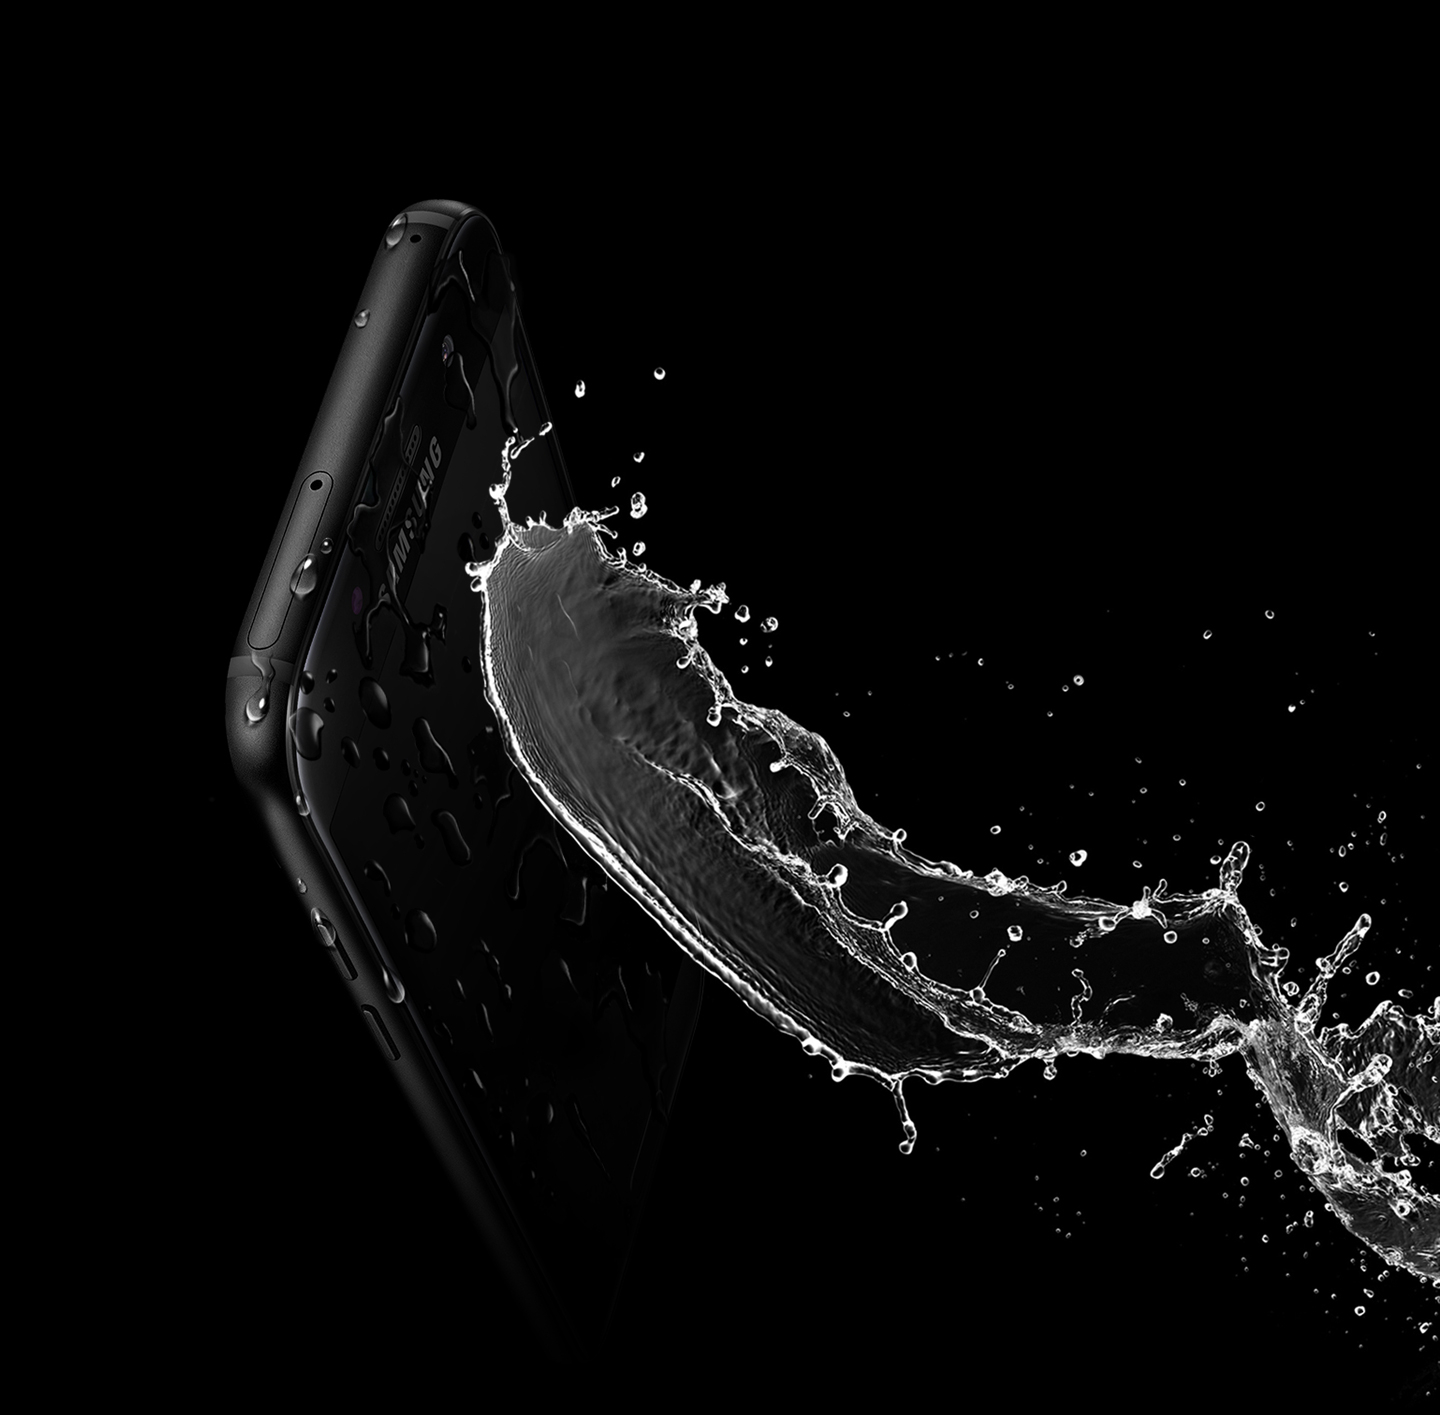 IP68 sayesinde Galaxy A3 (2017)'nin suya dayanıklığının gösterildiği görüntü.